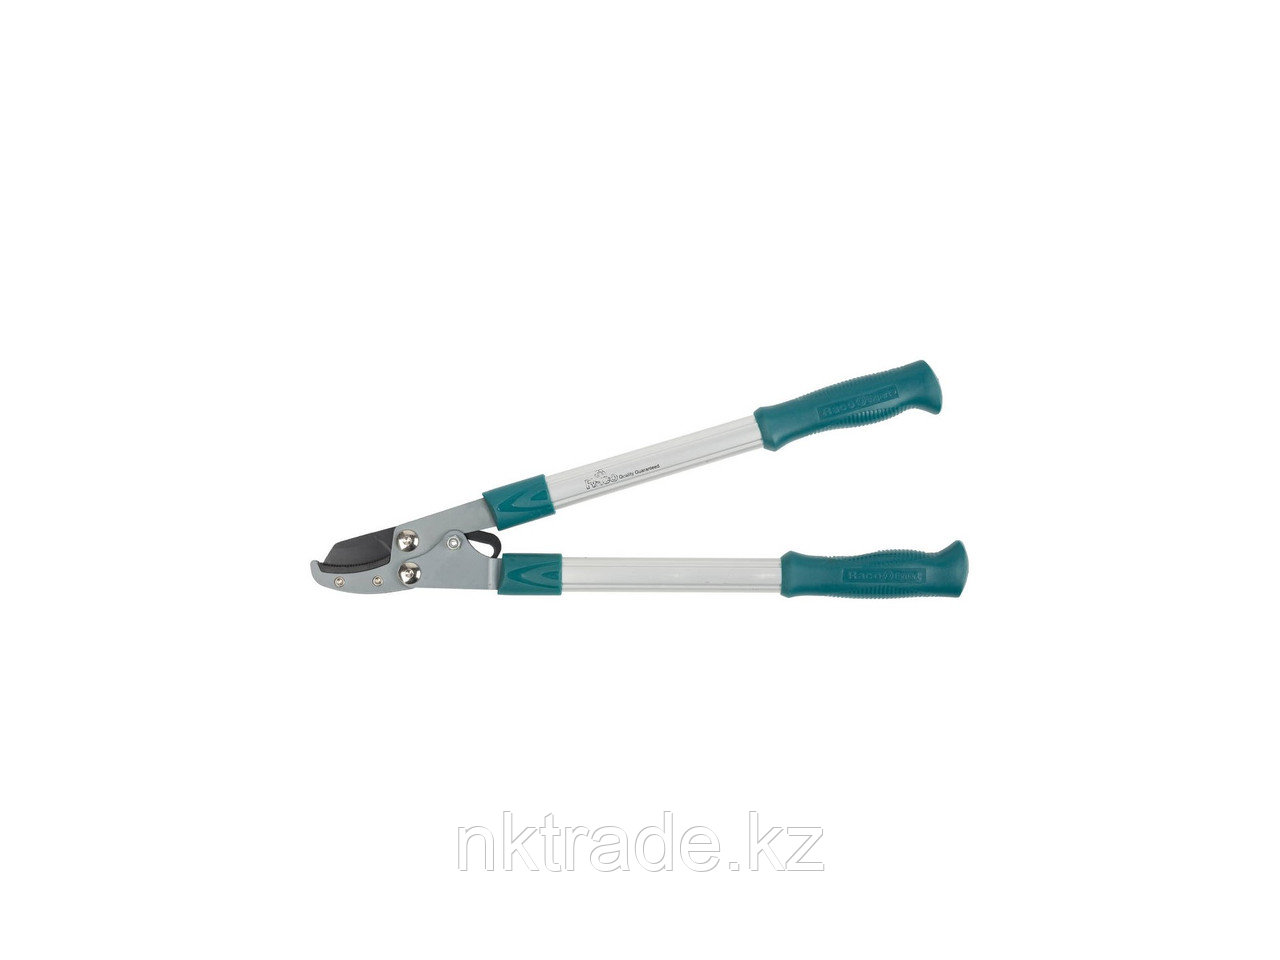 Сучкорез, RACO 4214-53/220, с облегченными алюминиевыми ручками, 2-рычажный, с упорной пластиной, рез до 26мм,